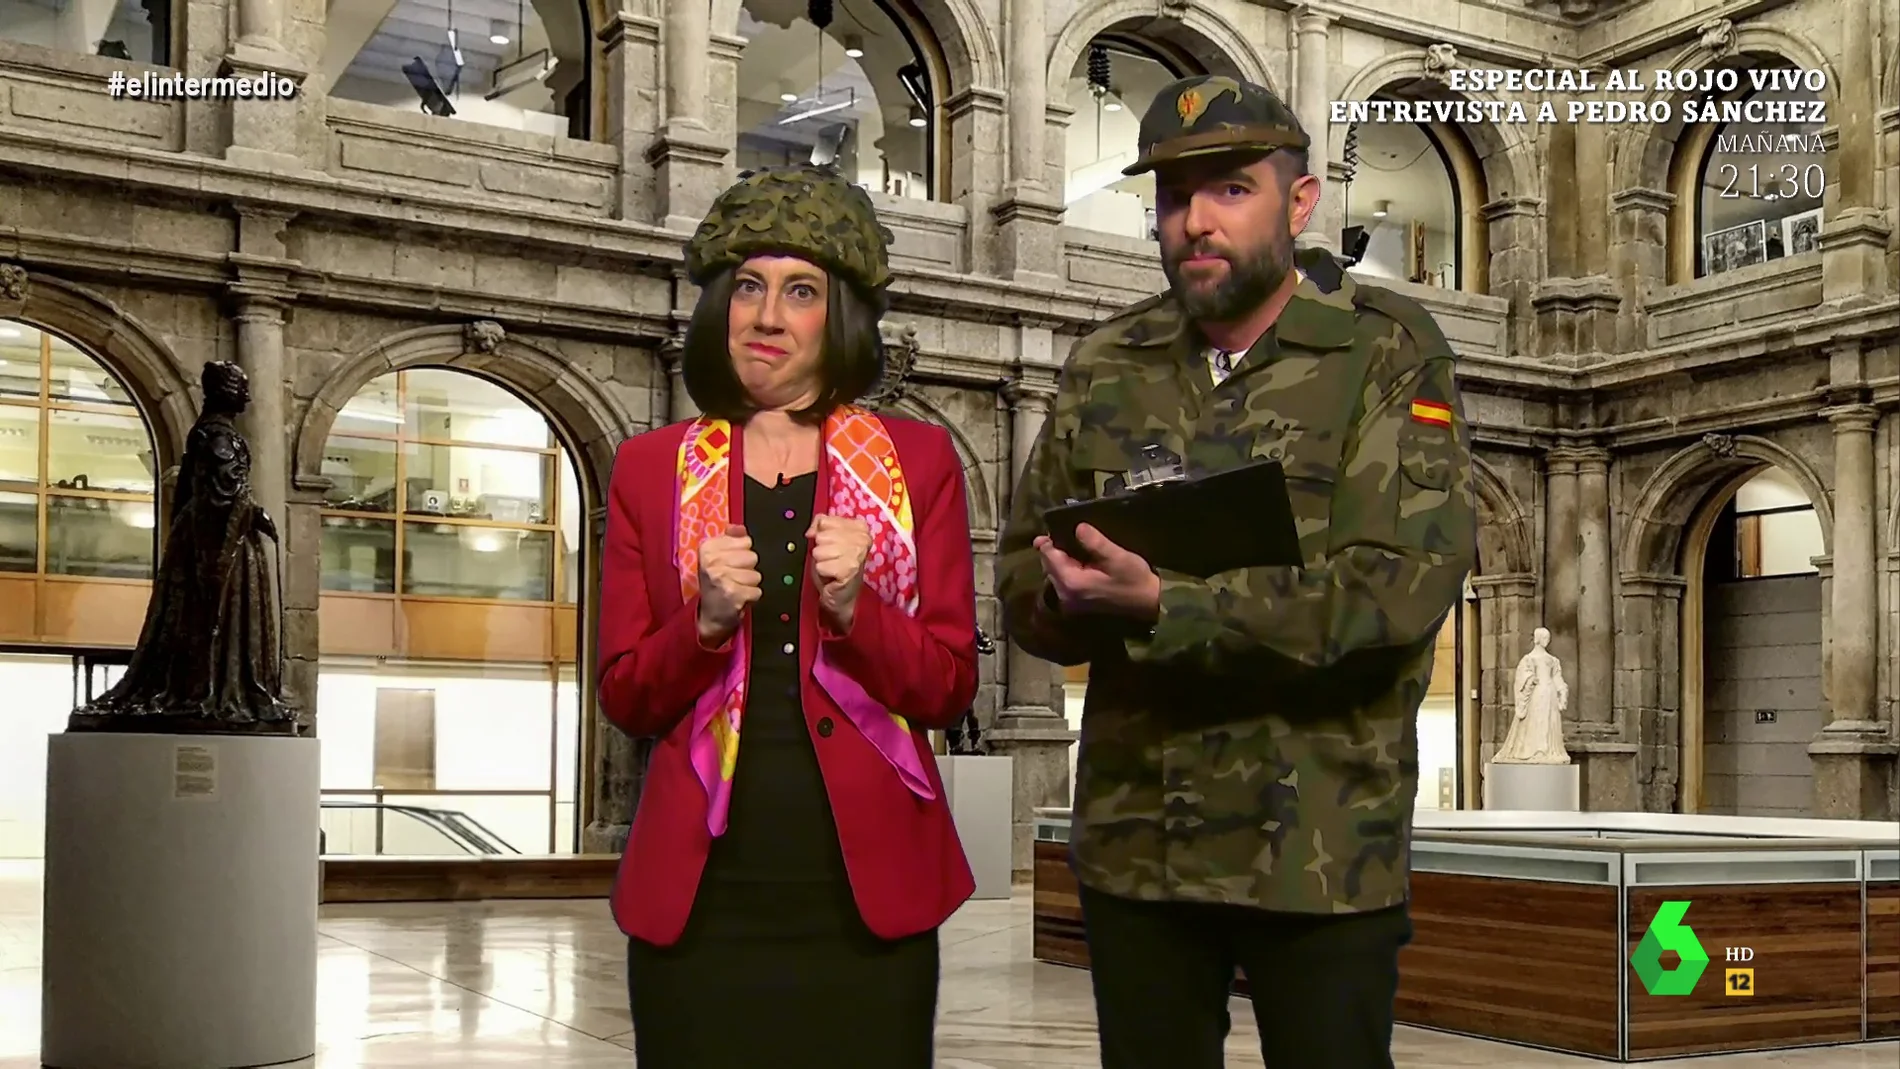 'Robles' (Cristina Gallego) y el 'recluta Mateo' preparan la cena de la OTAN: "A Biden el filete en trozos pequeños"